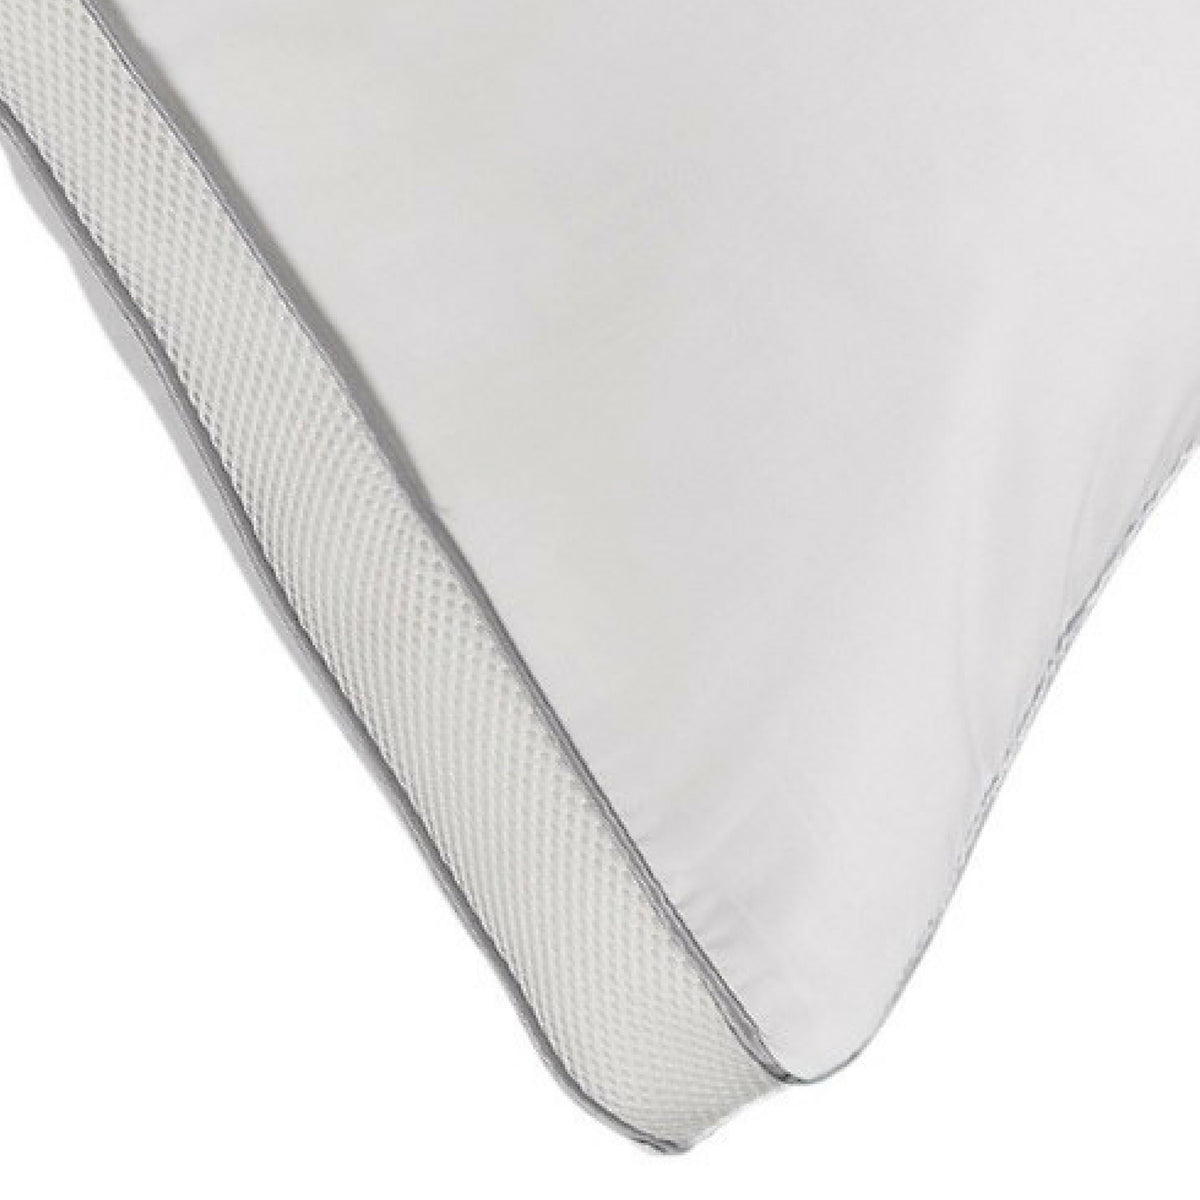 MEMORY FIBER Pillow 100% Cotton Luxurious Mesh Gusseted Shell All Sleeper  Pillow